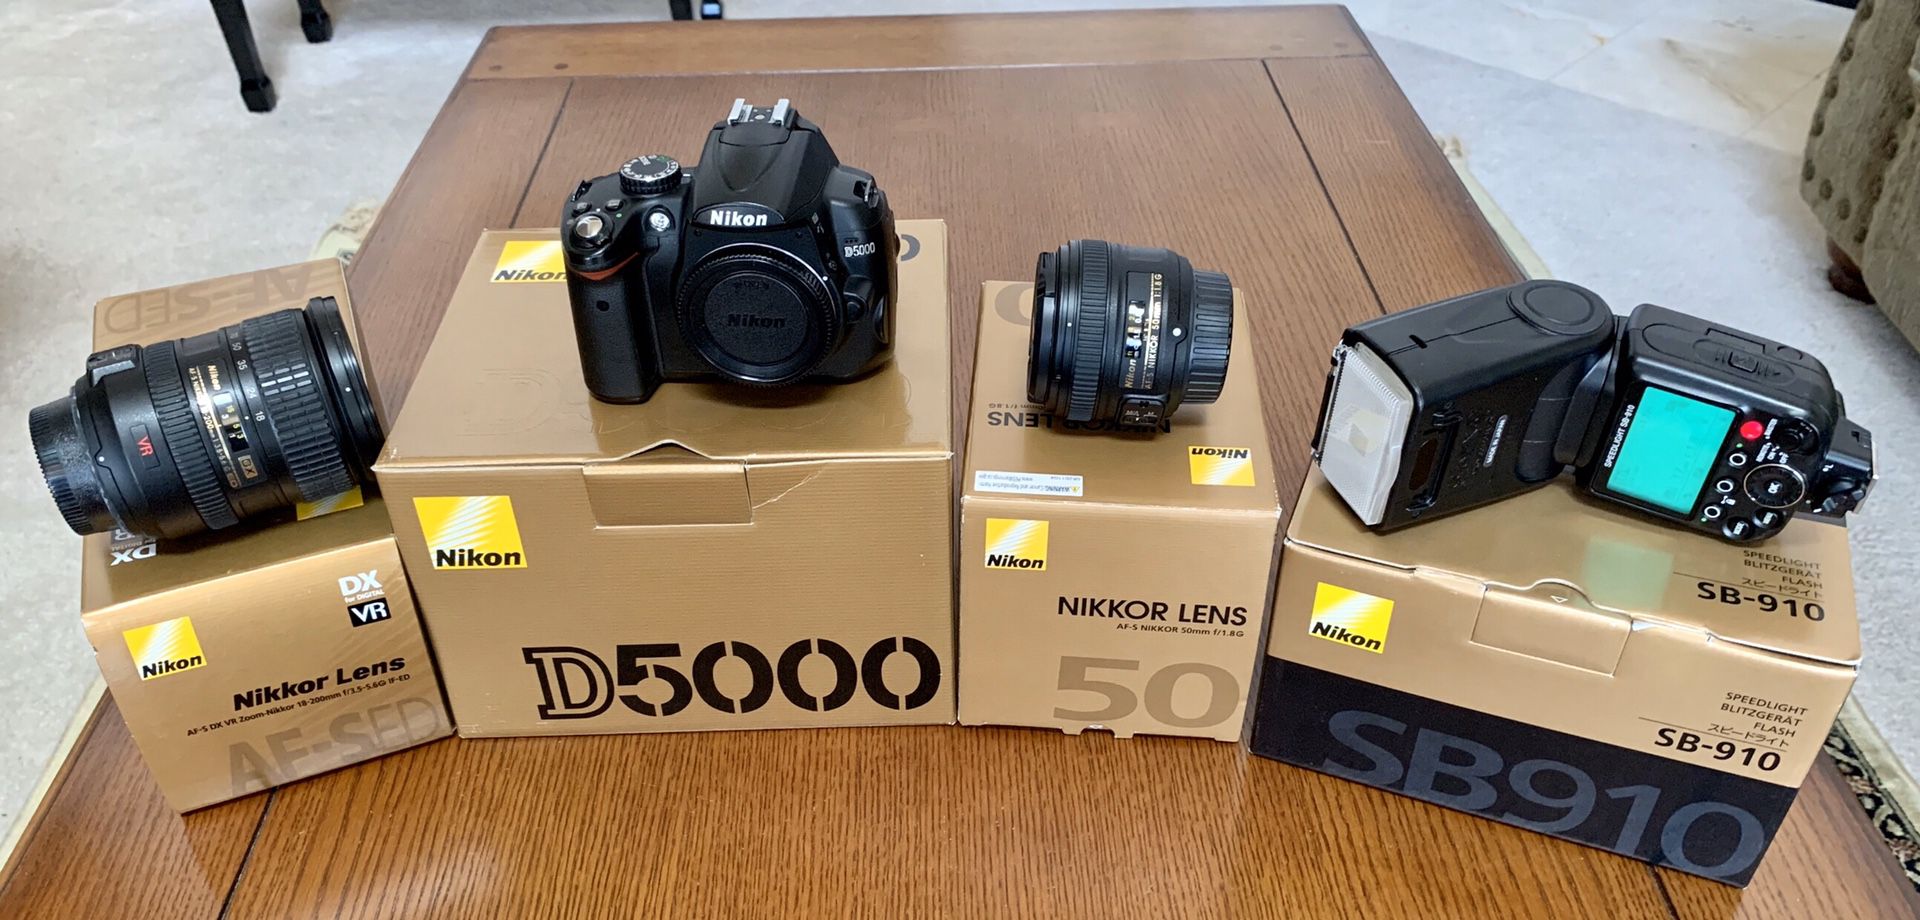 Nikon camera, lenses and flash